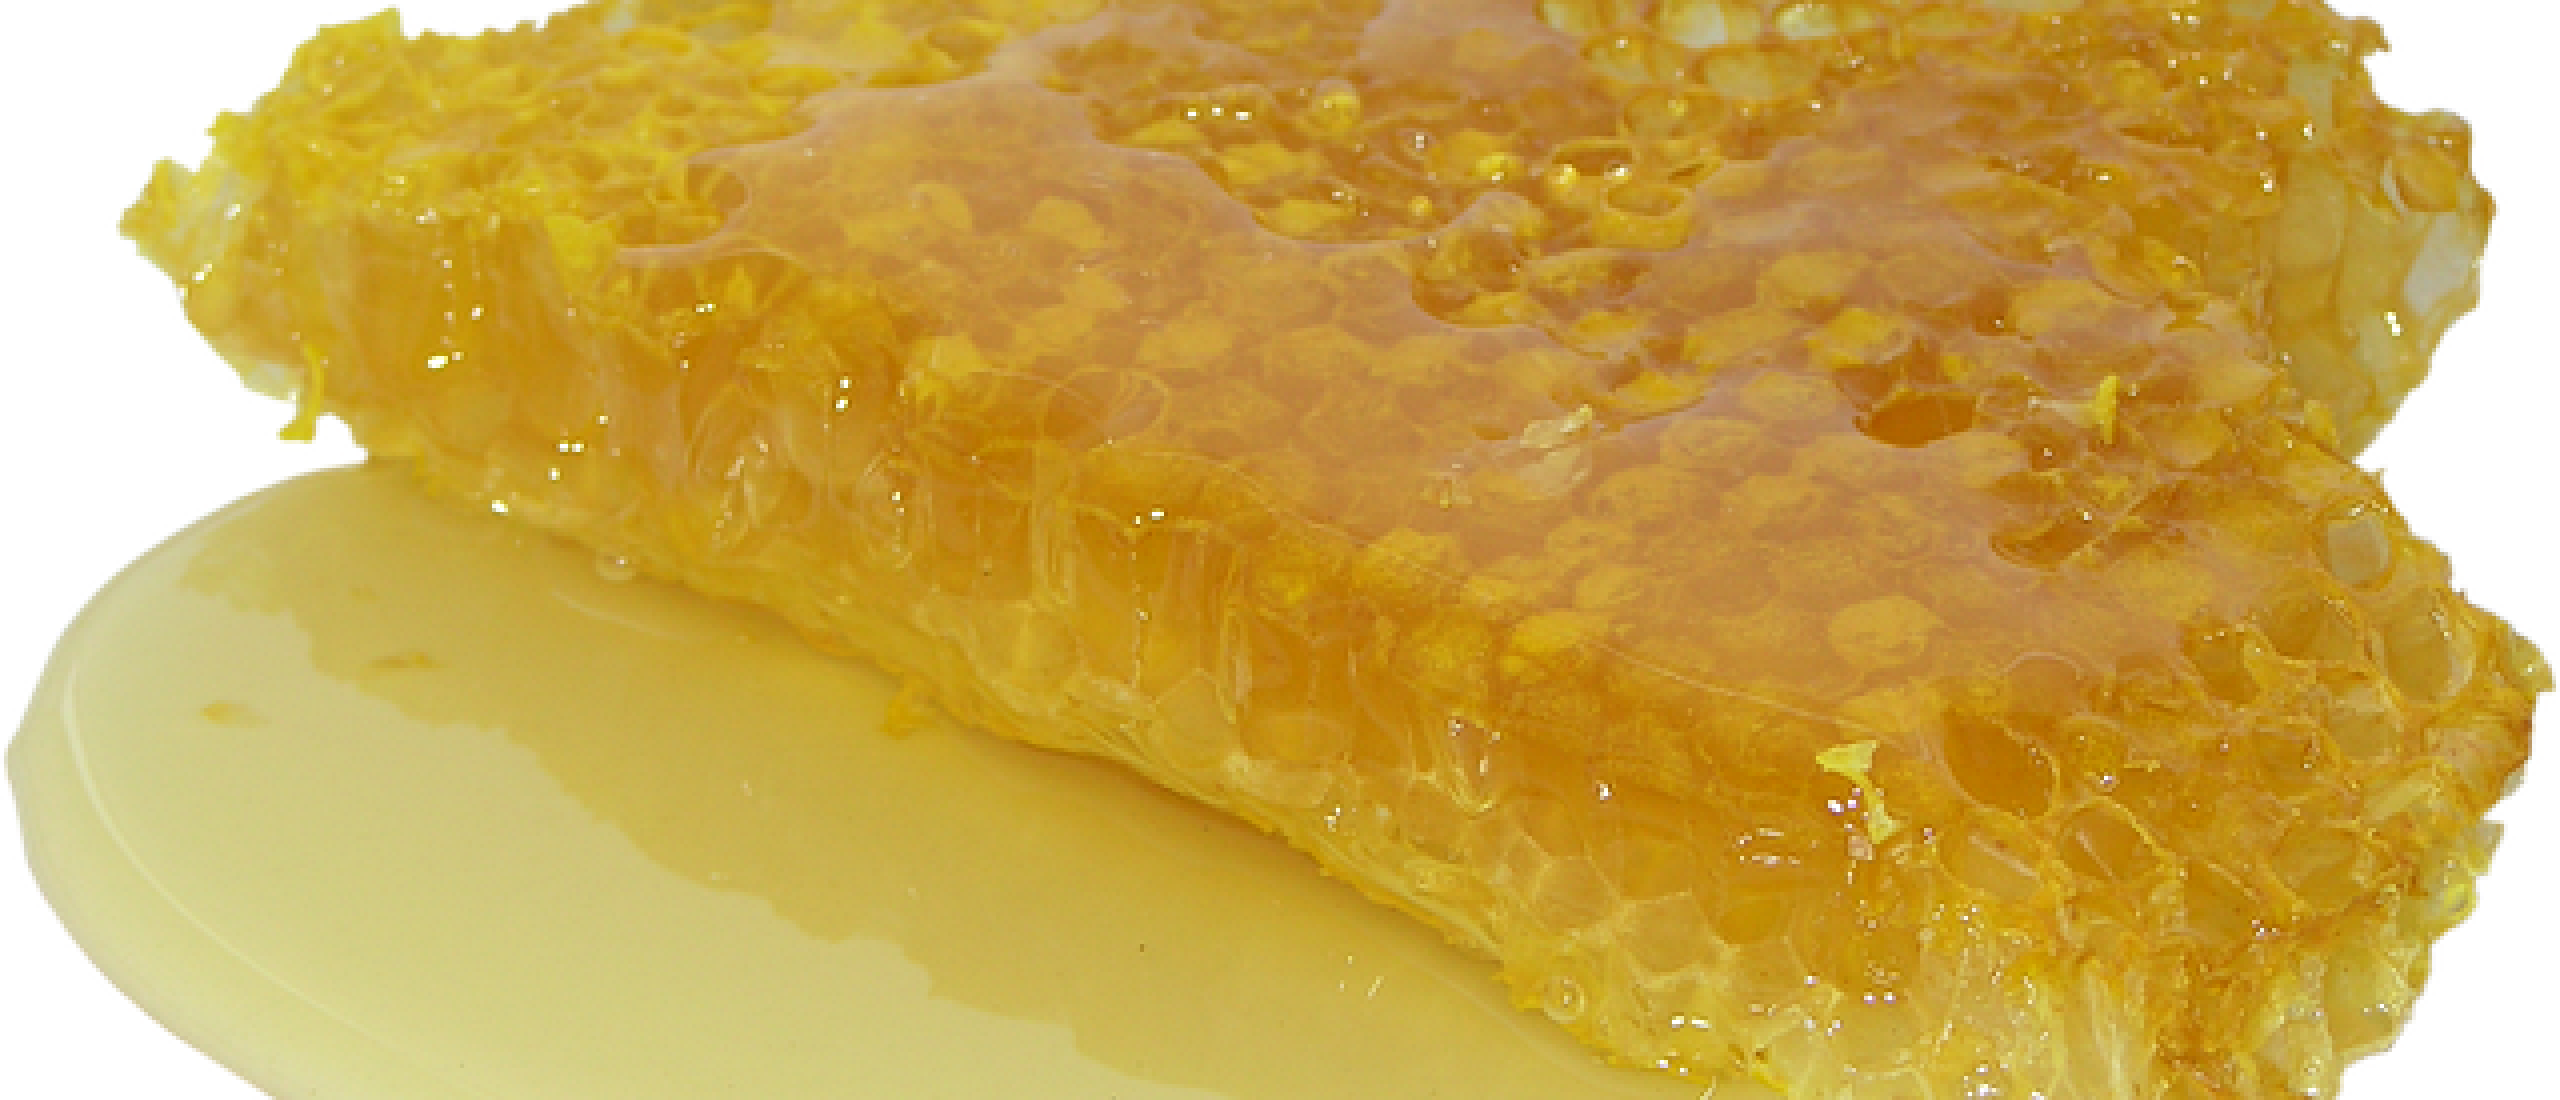 Zin in honing? Houd wel rekening met wilde bijen.